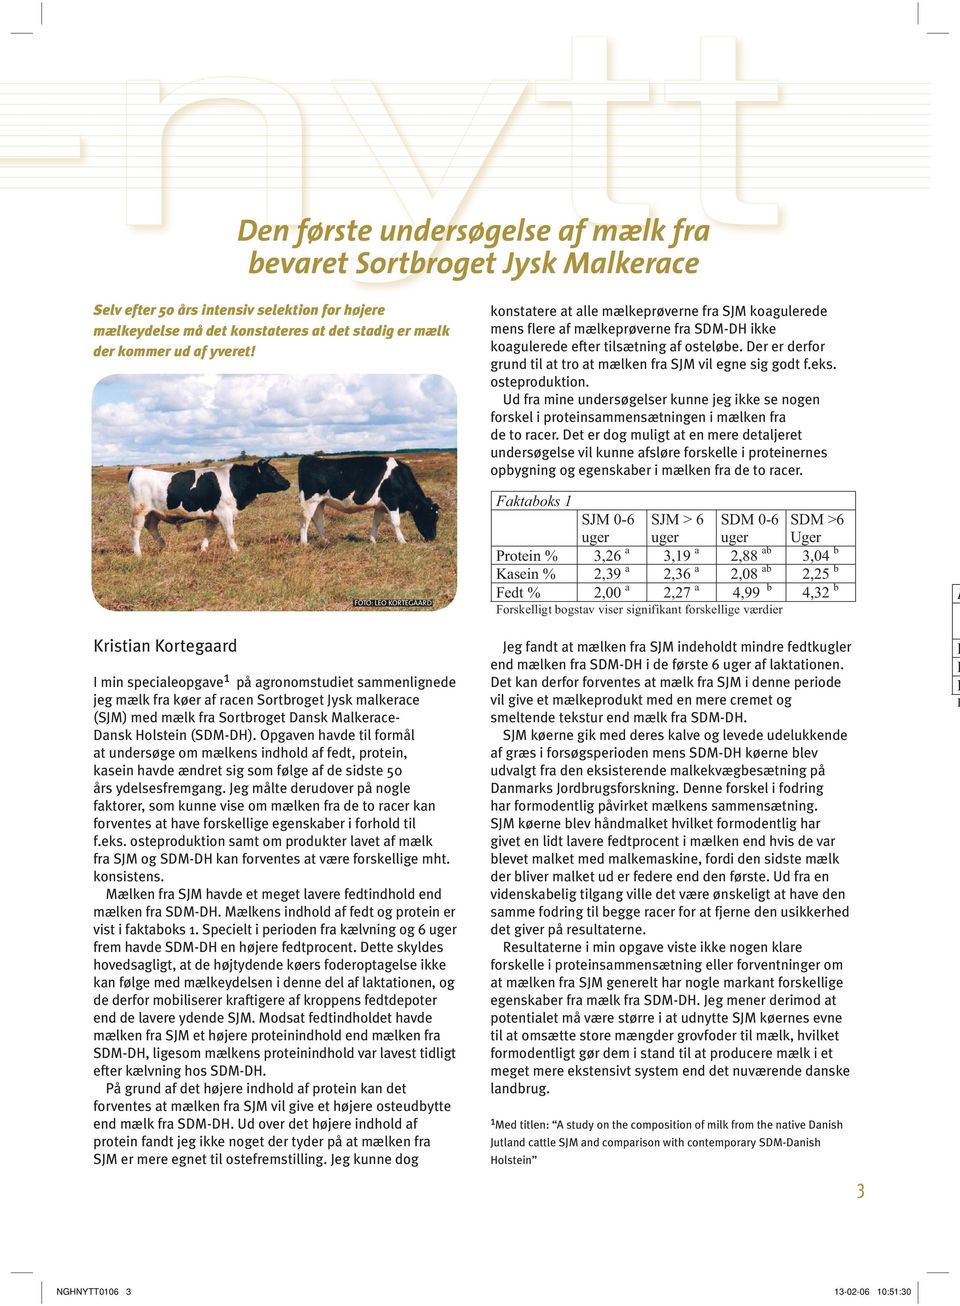 Dansk Holstein (SDM-DH). Opgaven havde til formål at undersøge om mælkens indhold af fedt, protein, kasein havde ændret sig som følge af de sidste 50 års ydelsesfremgang.